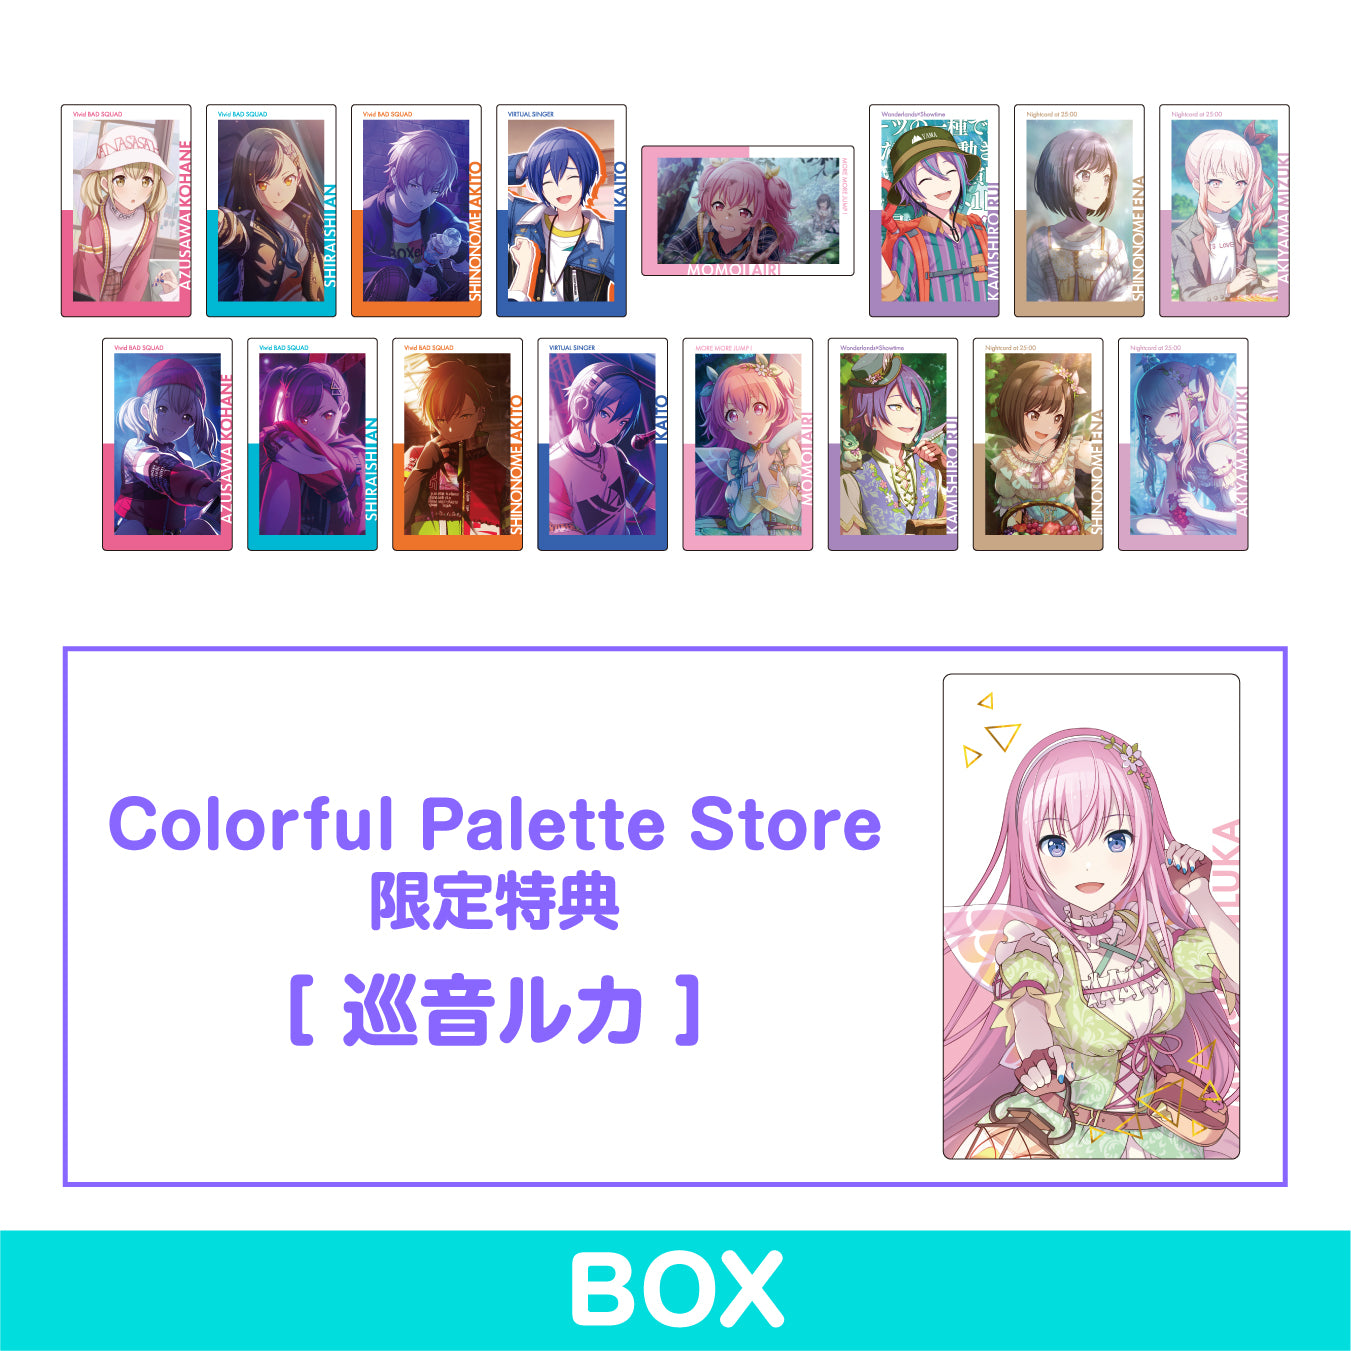 【予約商品】ePick card series vol.6 A BOX 特典付き［巡音ルカ 